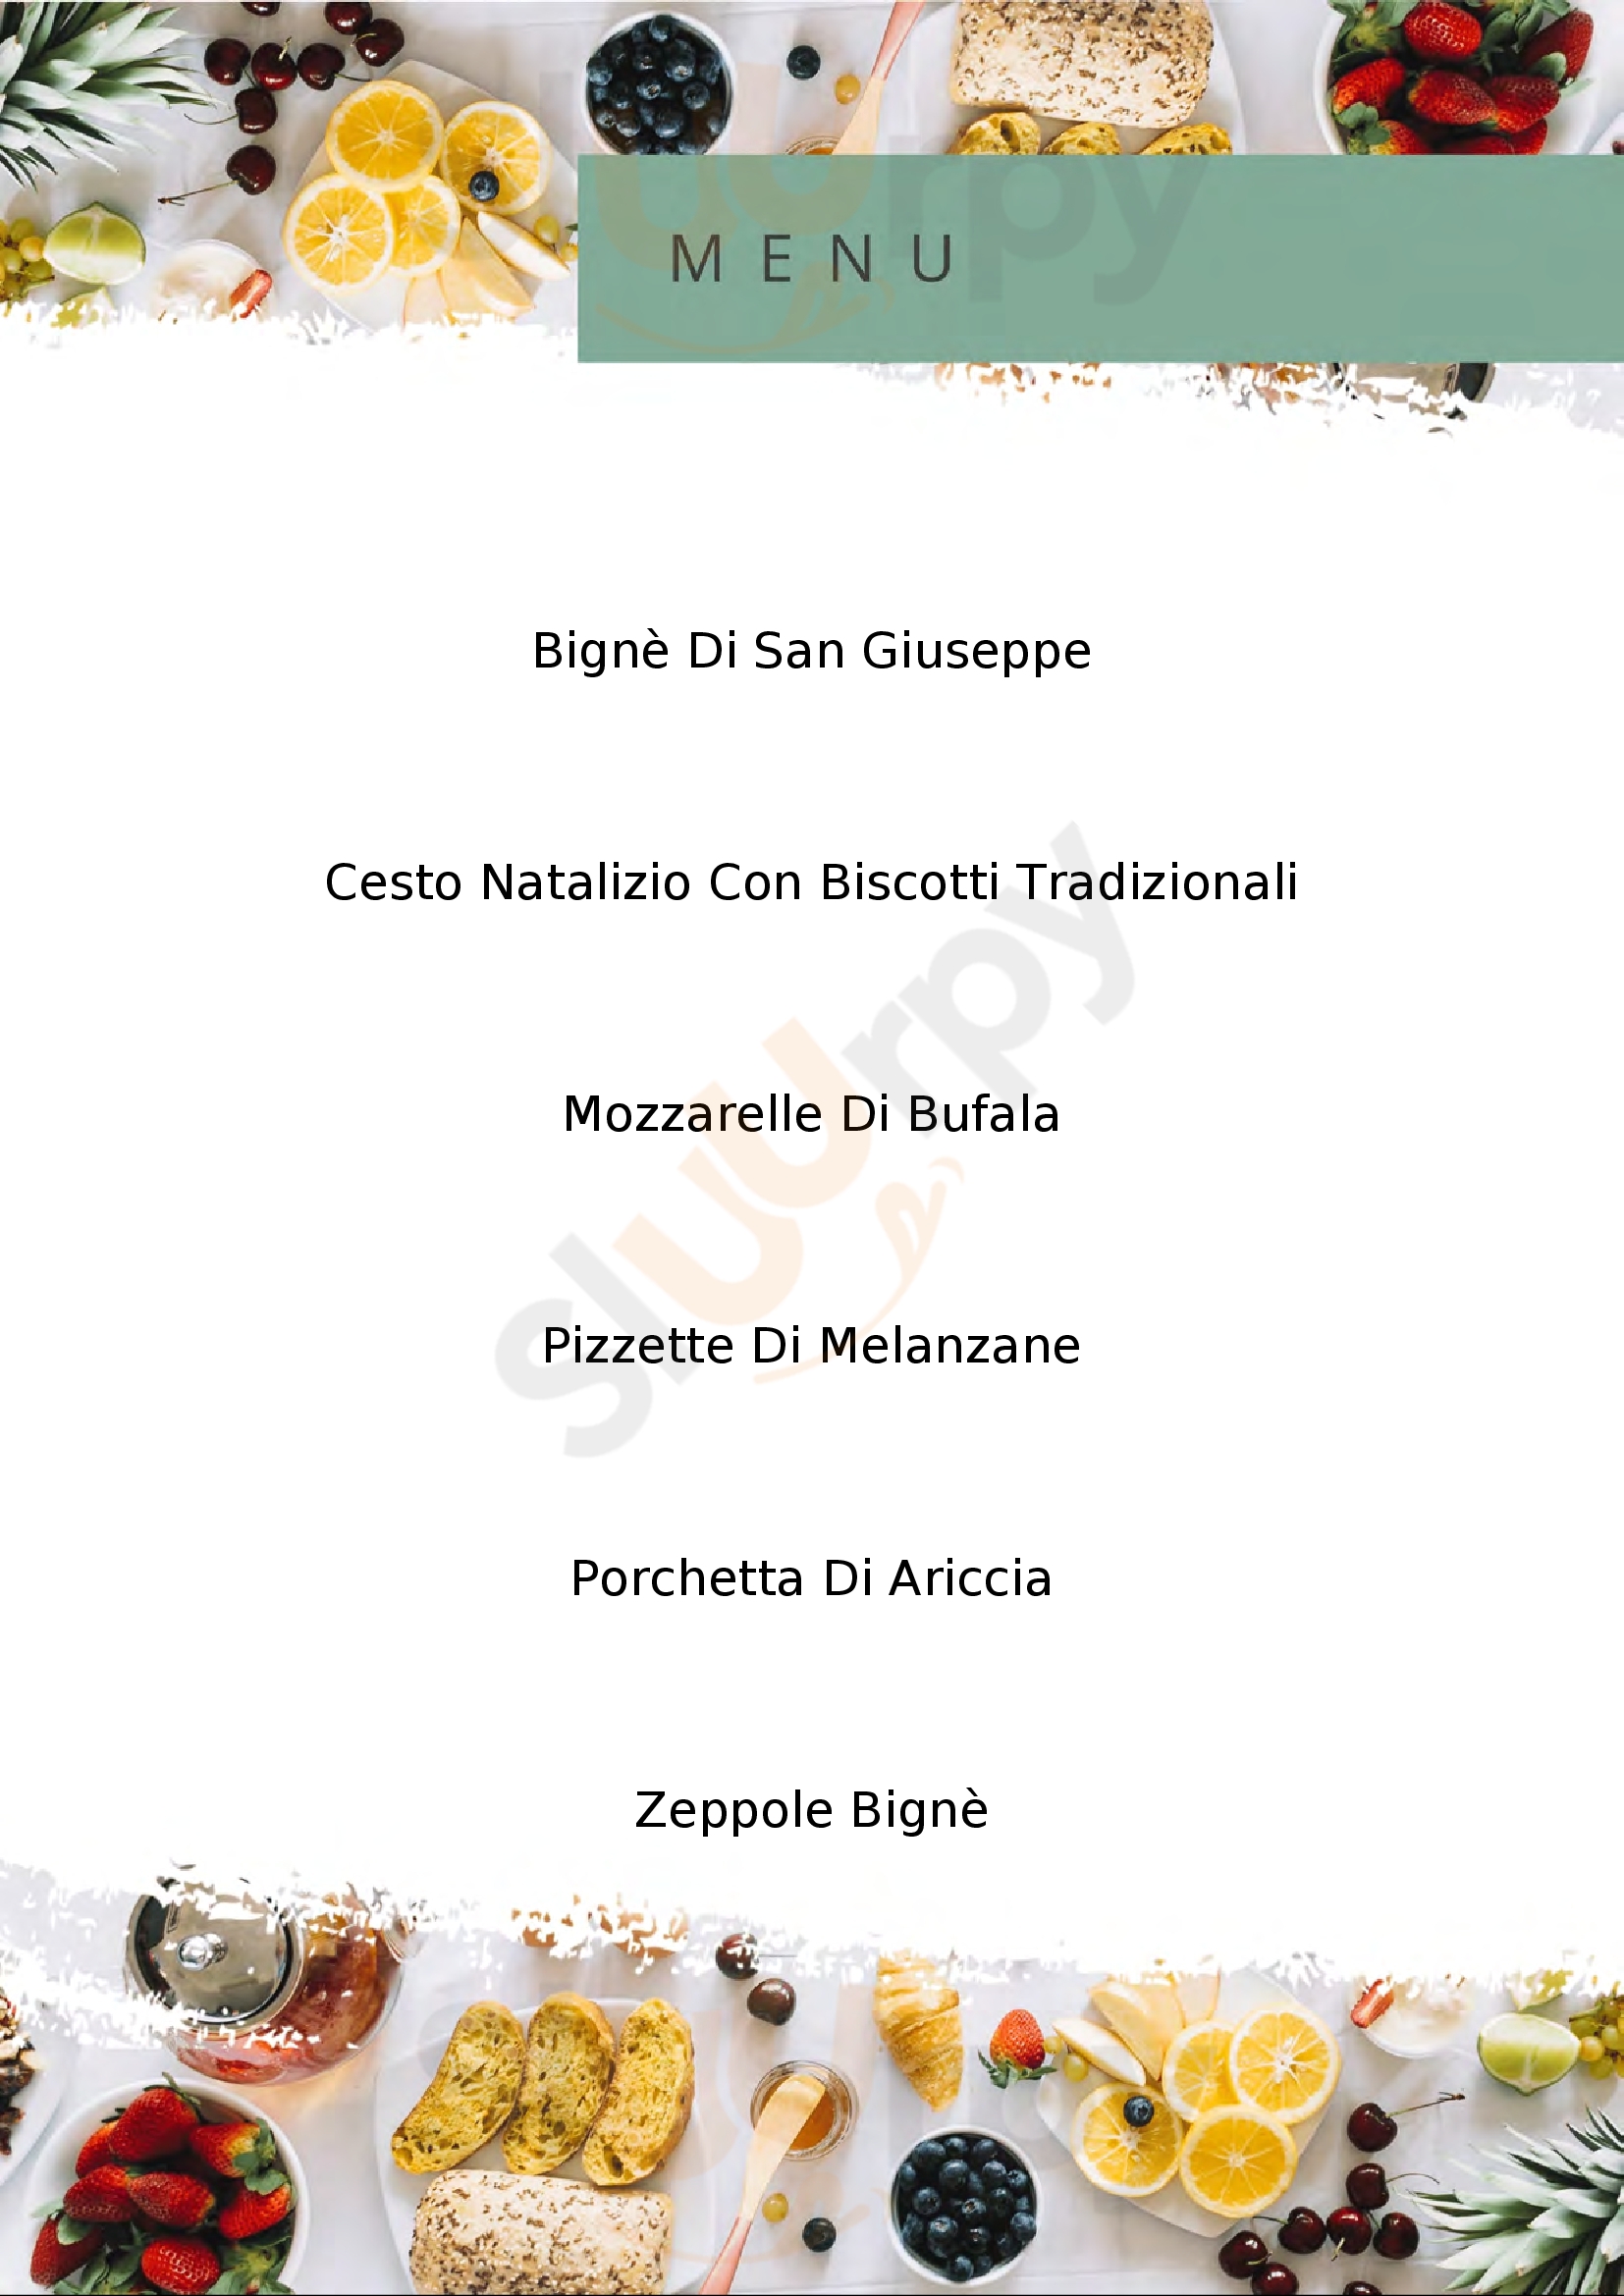 Panificio Forno a Legna Martini Artena menù 1 pagina